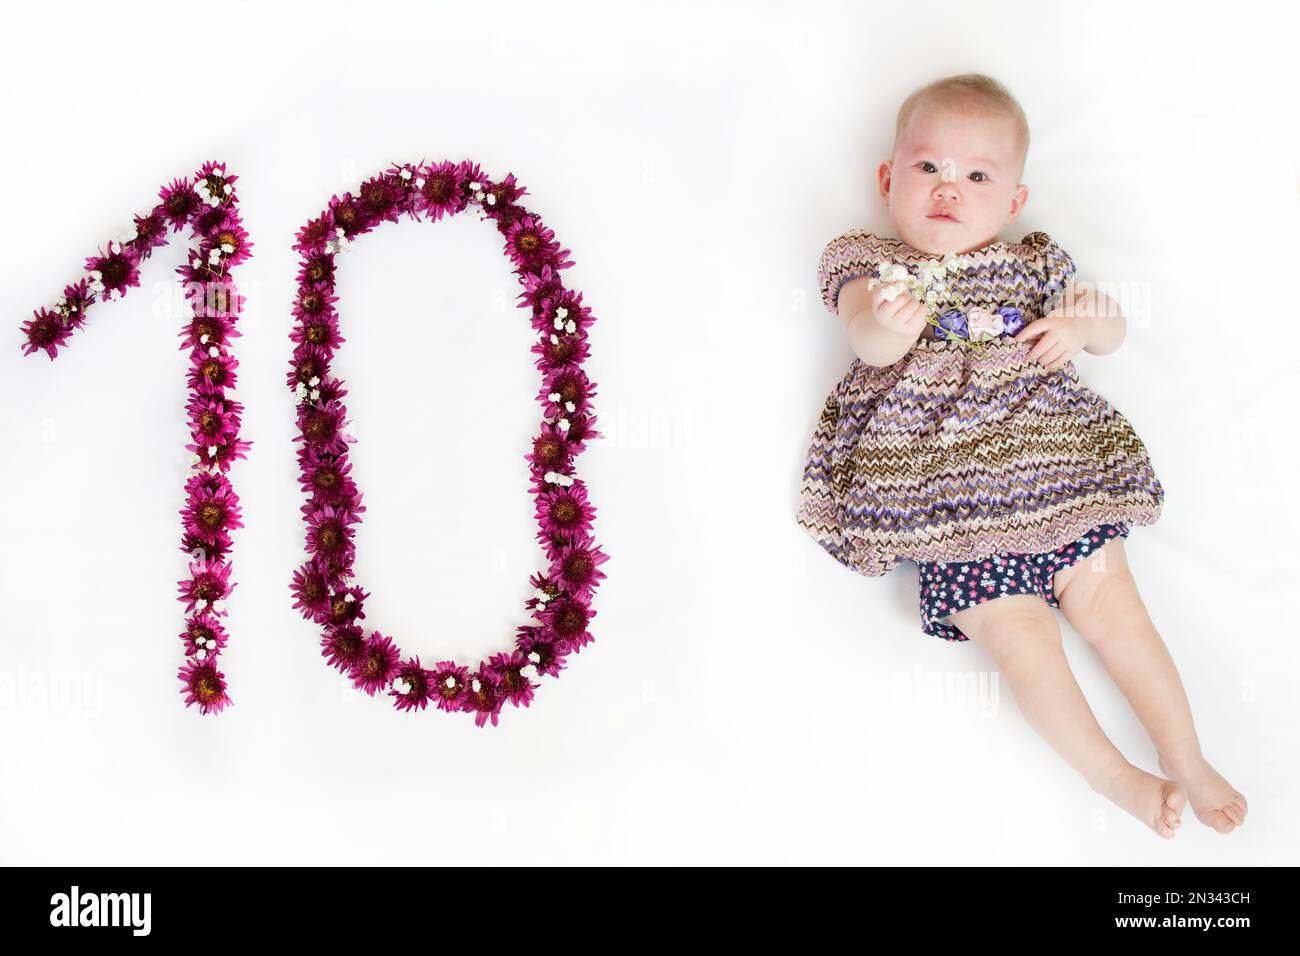 10 mesi di bambino immagini e fotografie stock ad alta risoluzione - Alamy